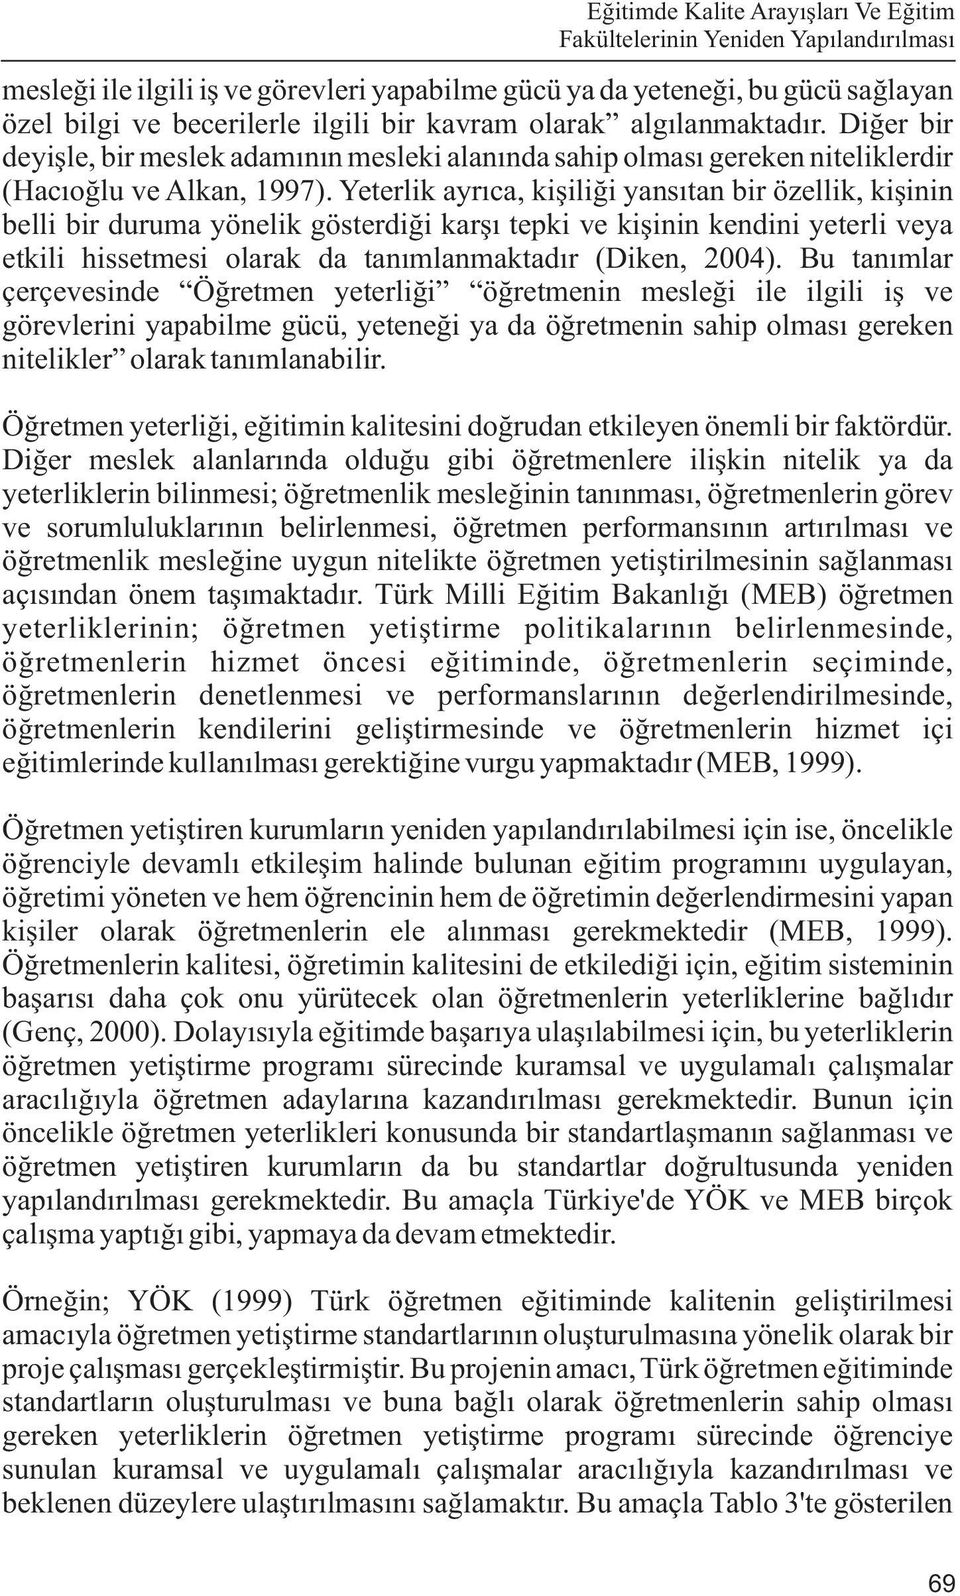 Yeterlik ayrýca, kiþiliði yansýtan bir özellik, kiþinin belli bir duruma yönelik gösterdiði karþý tepki ve kiþinin kendini yeterli veya etkili hissetmesi olarak da tanýmlanmaktadýr (Diken, 2004).